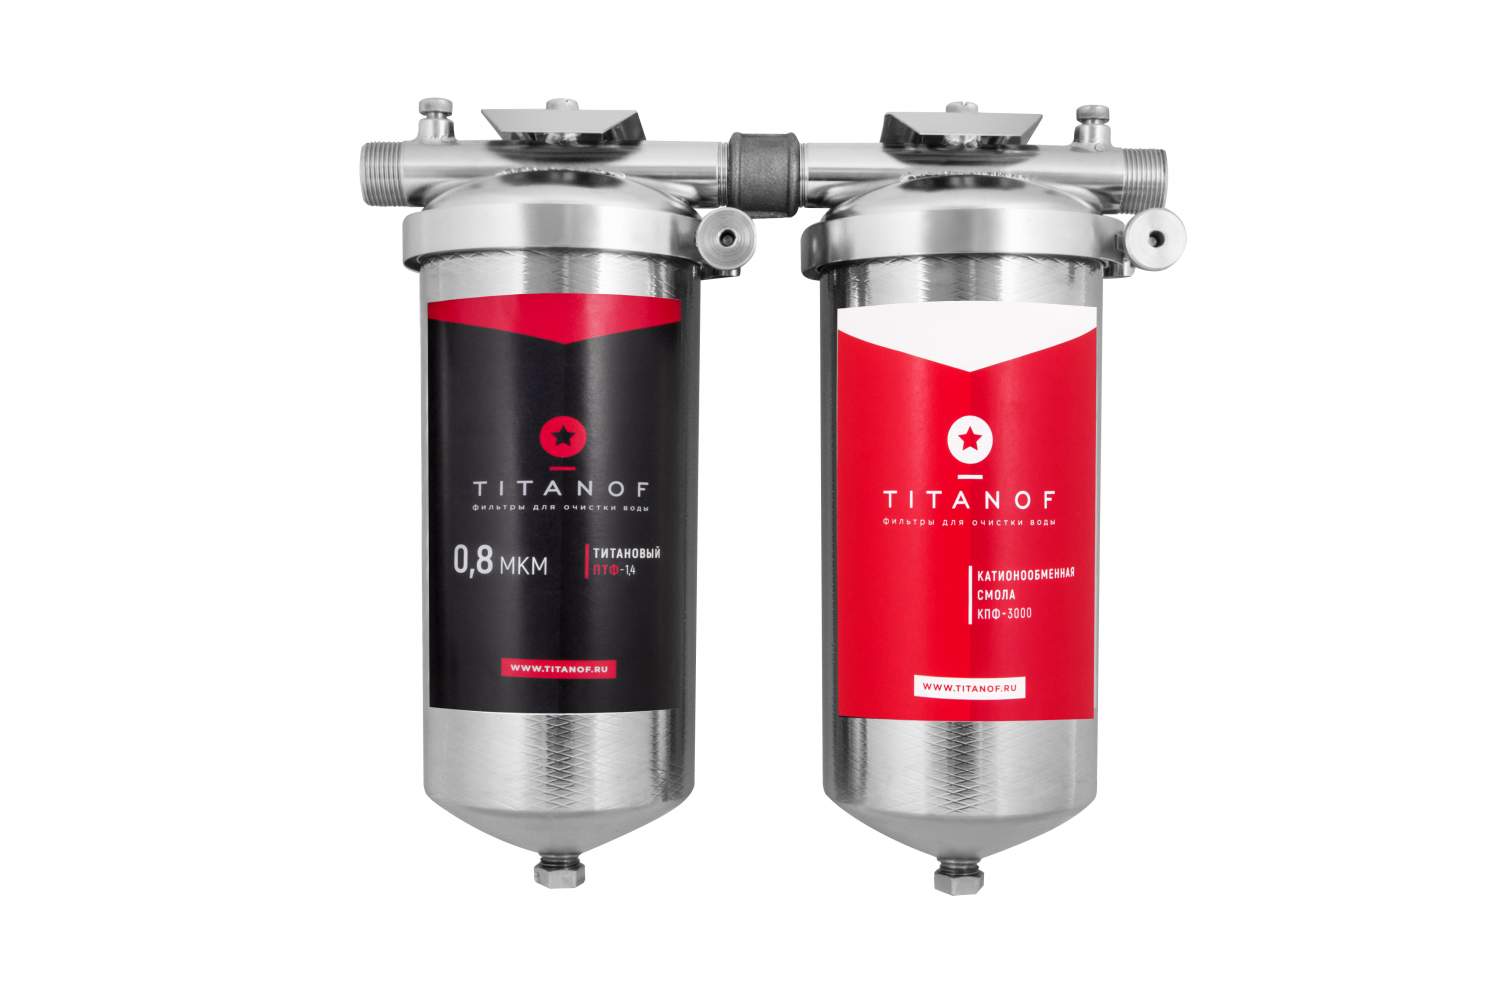 Титановый фильтр для воды TITANOF (Титанов) — миф или реальность?